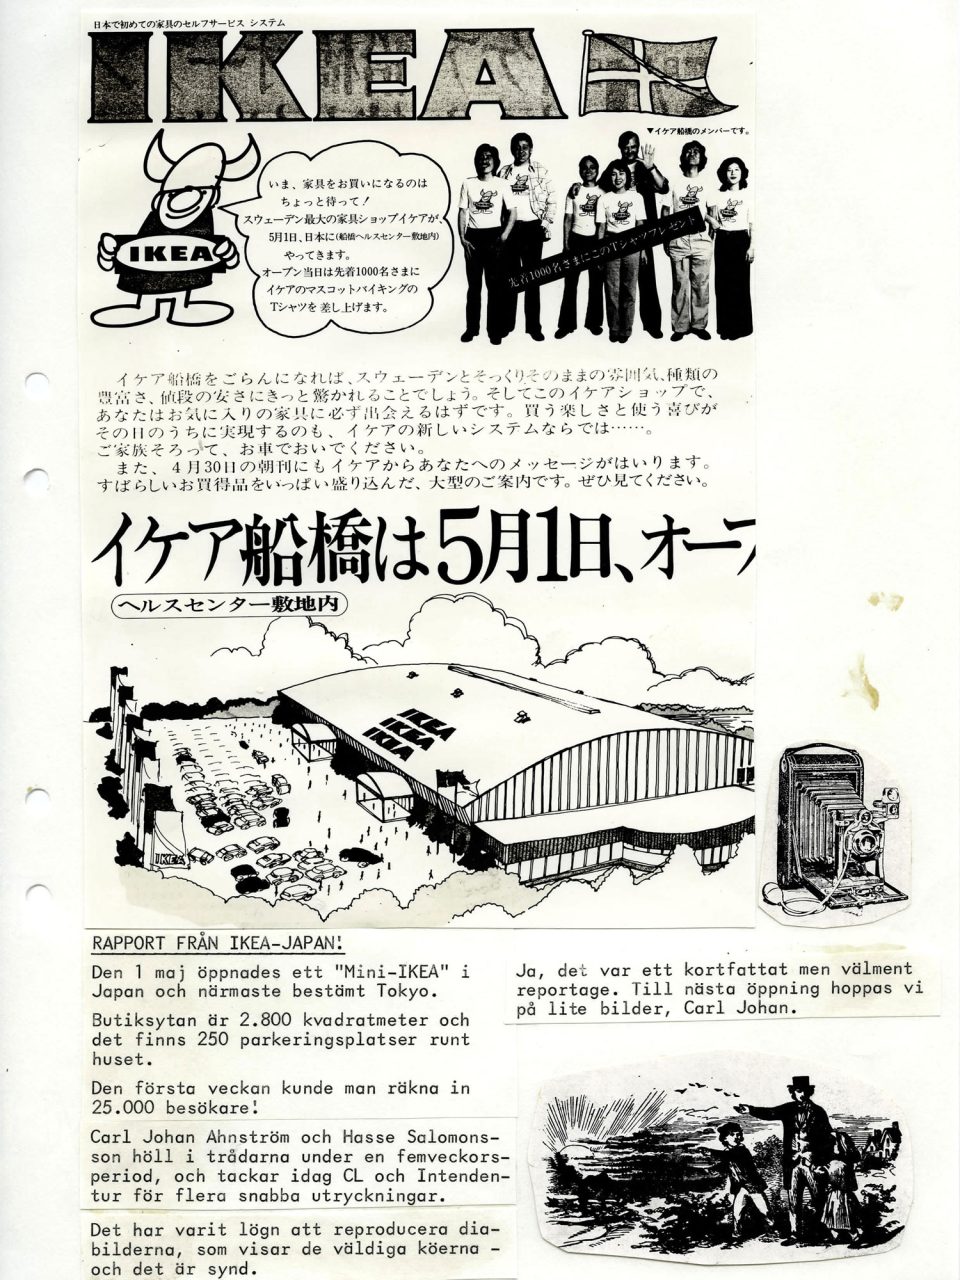 Sida från en klipp-och-klistra-tidning från 1970-talet med svartvita kopierade bilder och japansk text.